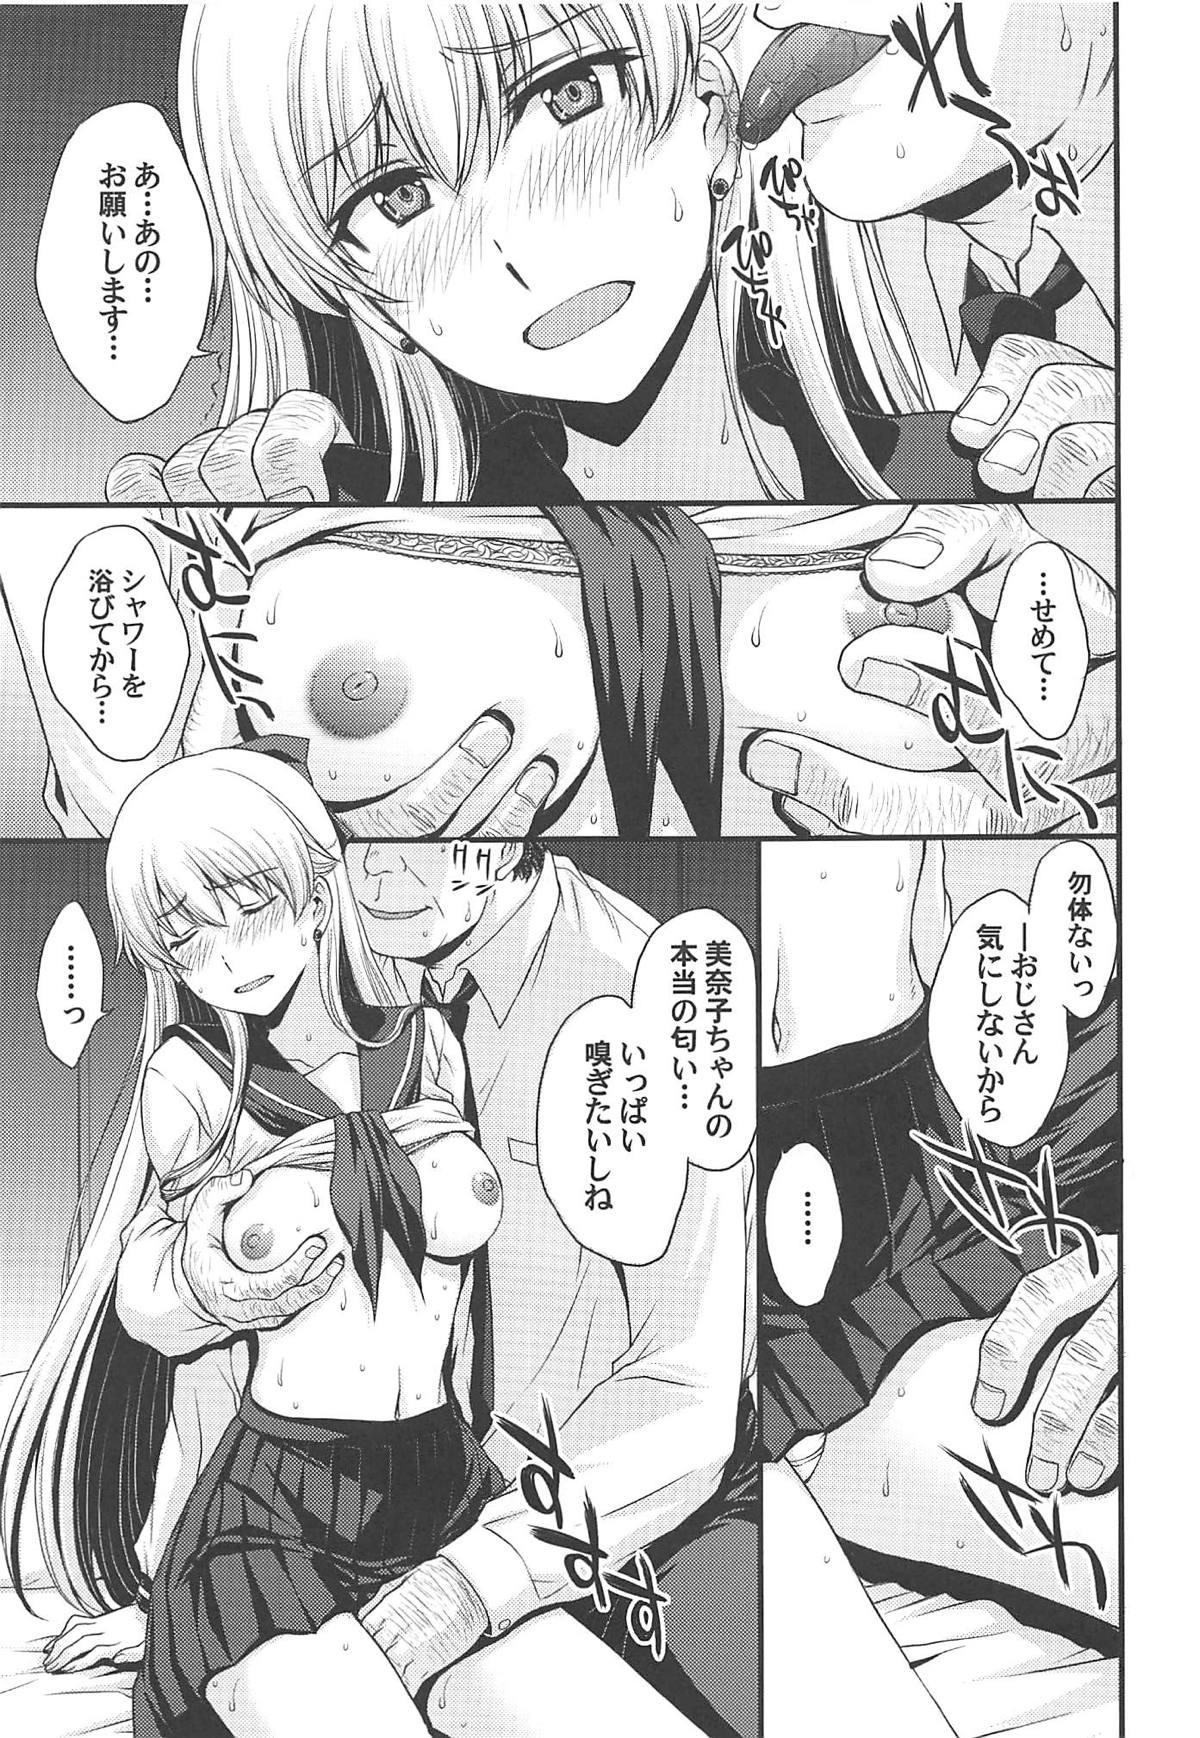 Suruba Konya wa Minako o Okazu ni Shitai. - Sailor moon Cumload - Page 4